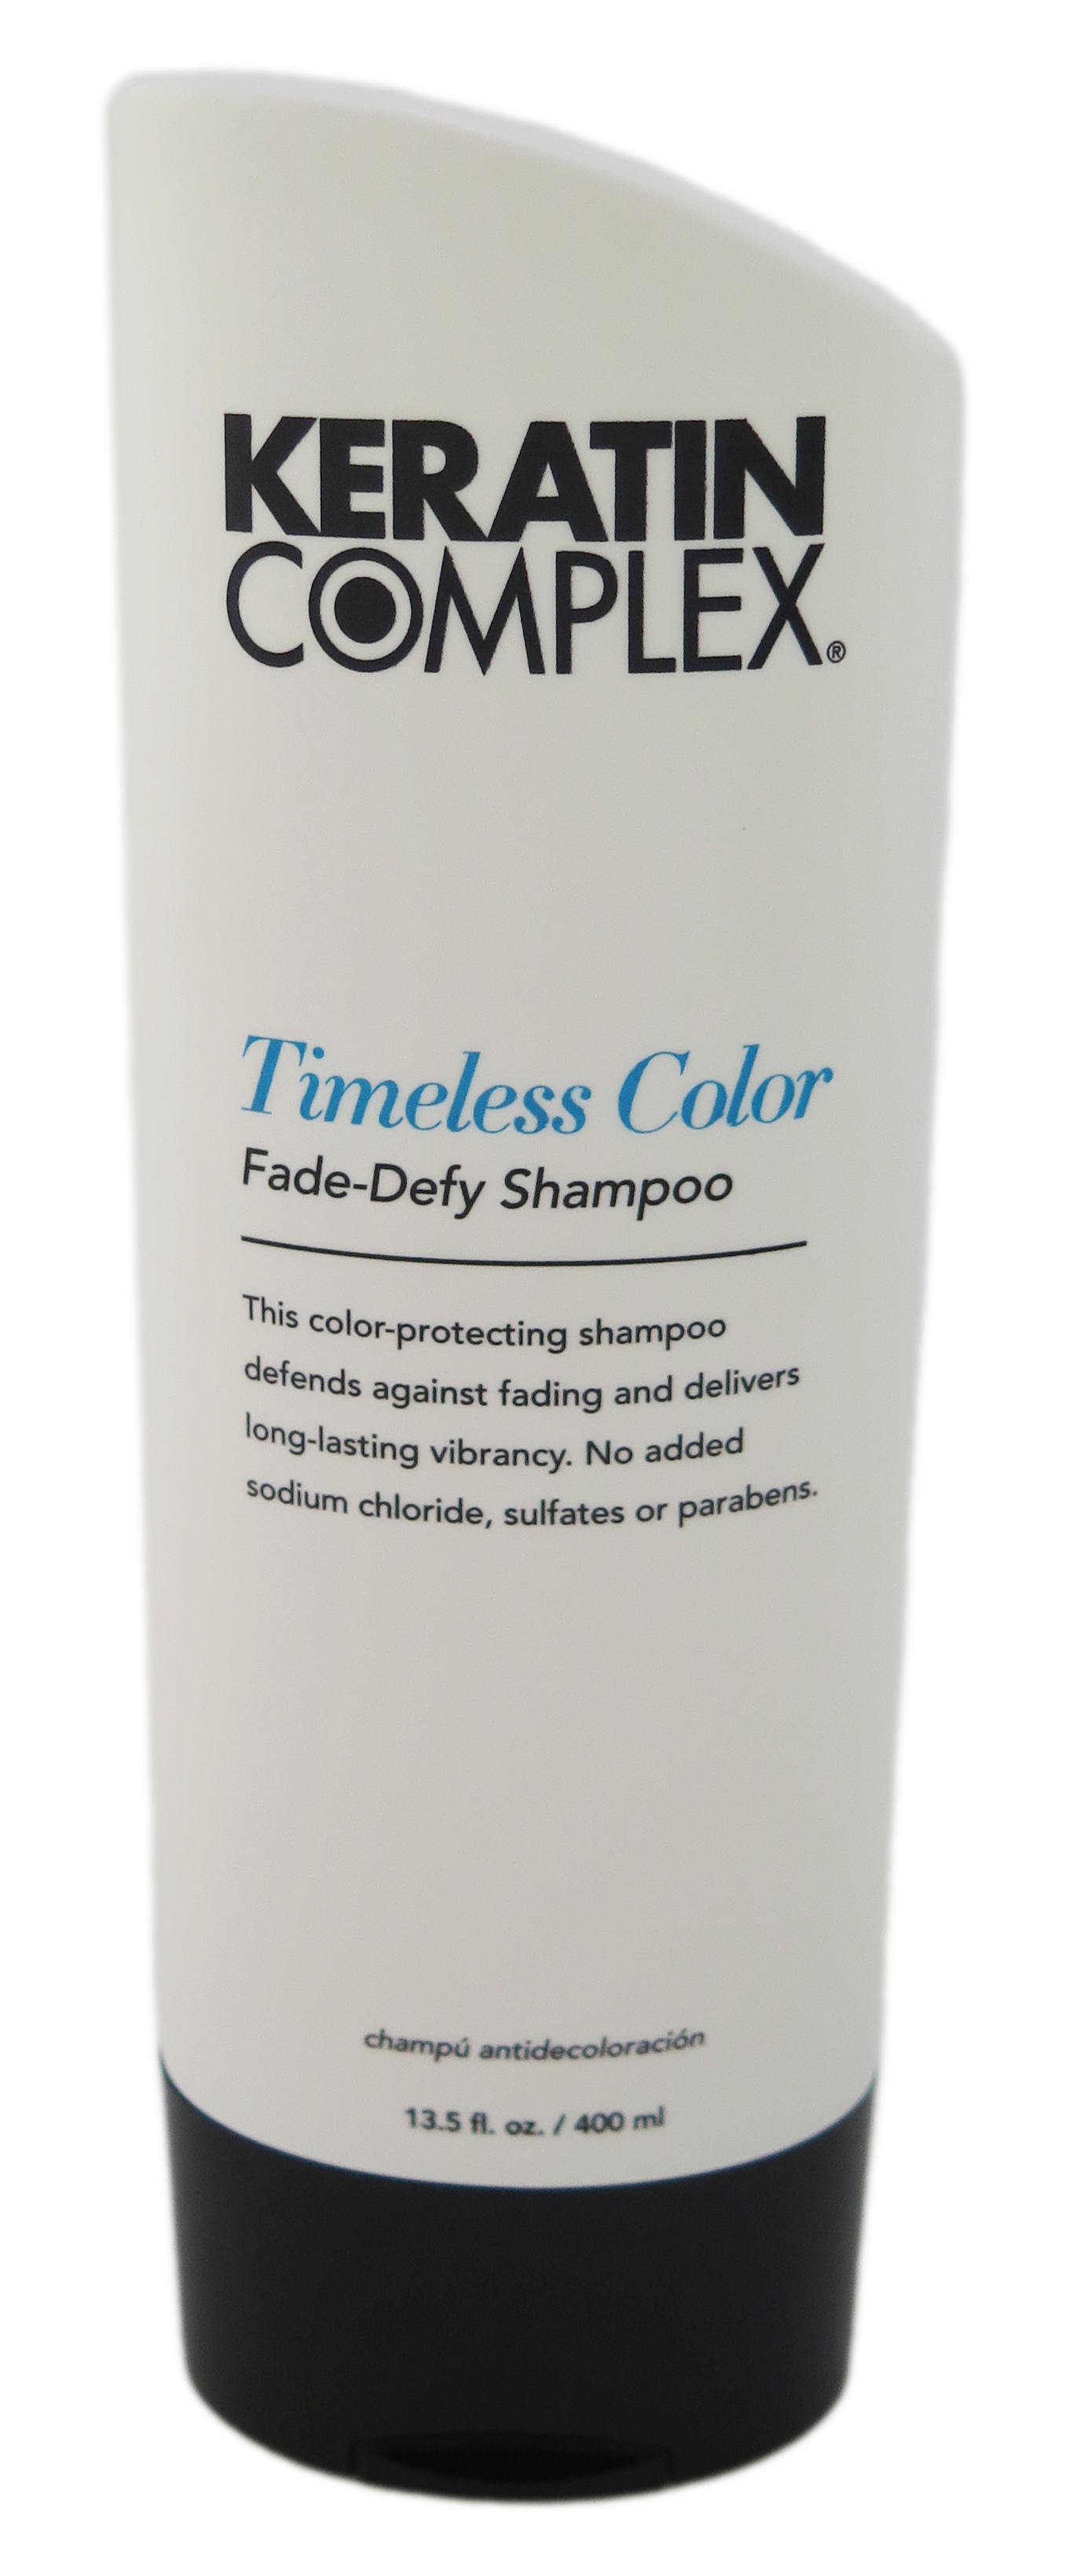 Keratin Complex Timeless Color Fade-Defy Shampoo 13.5oz